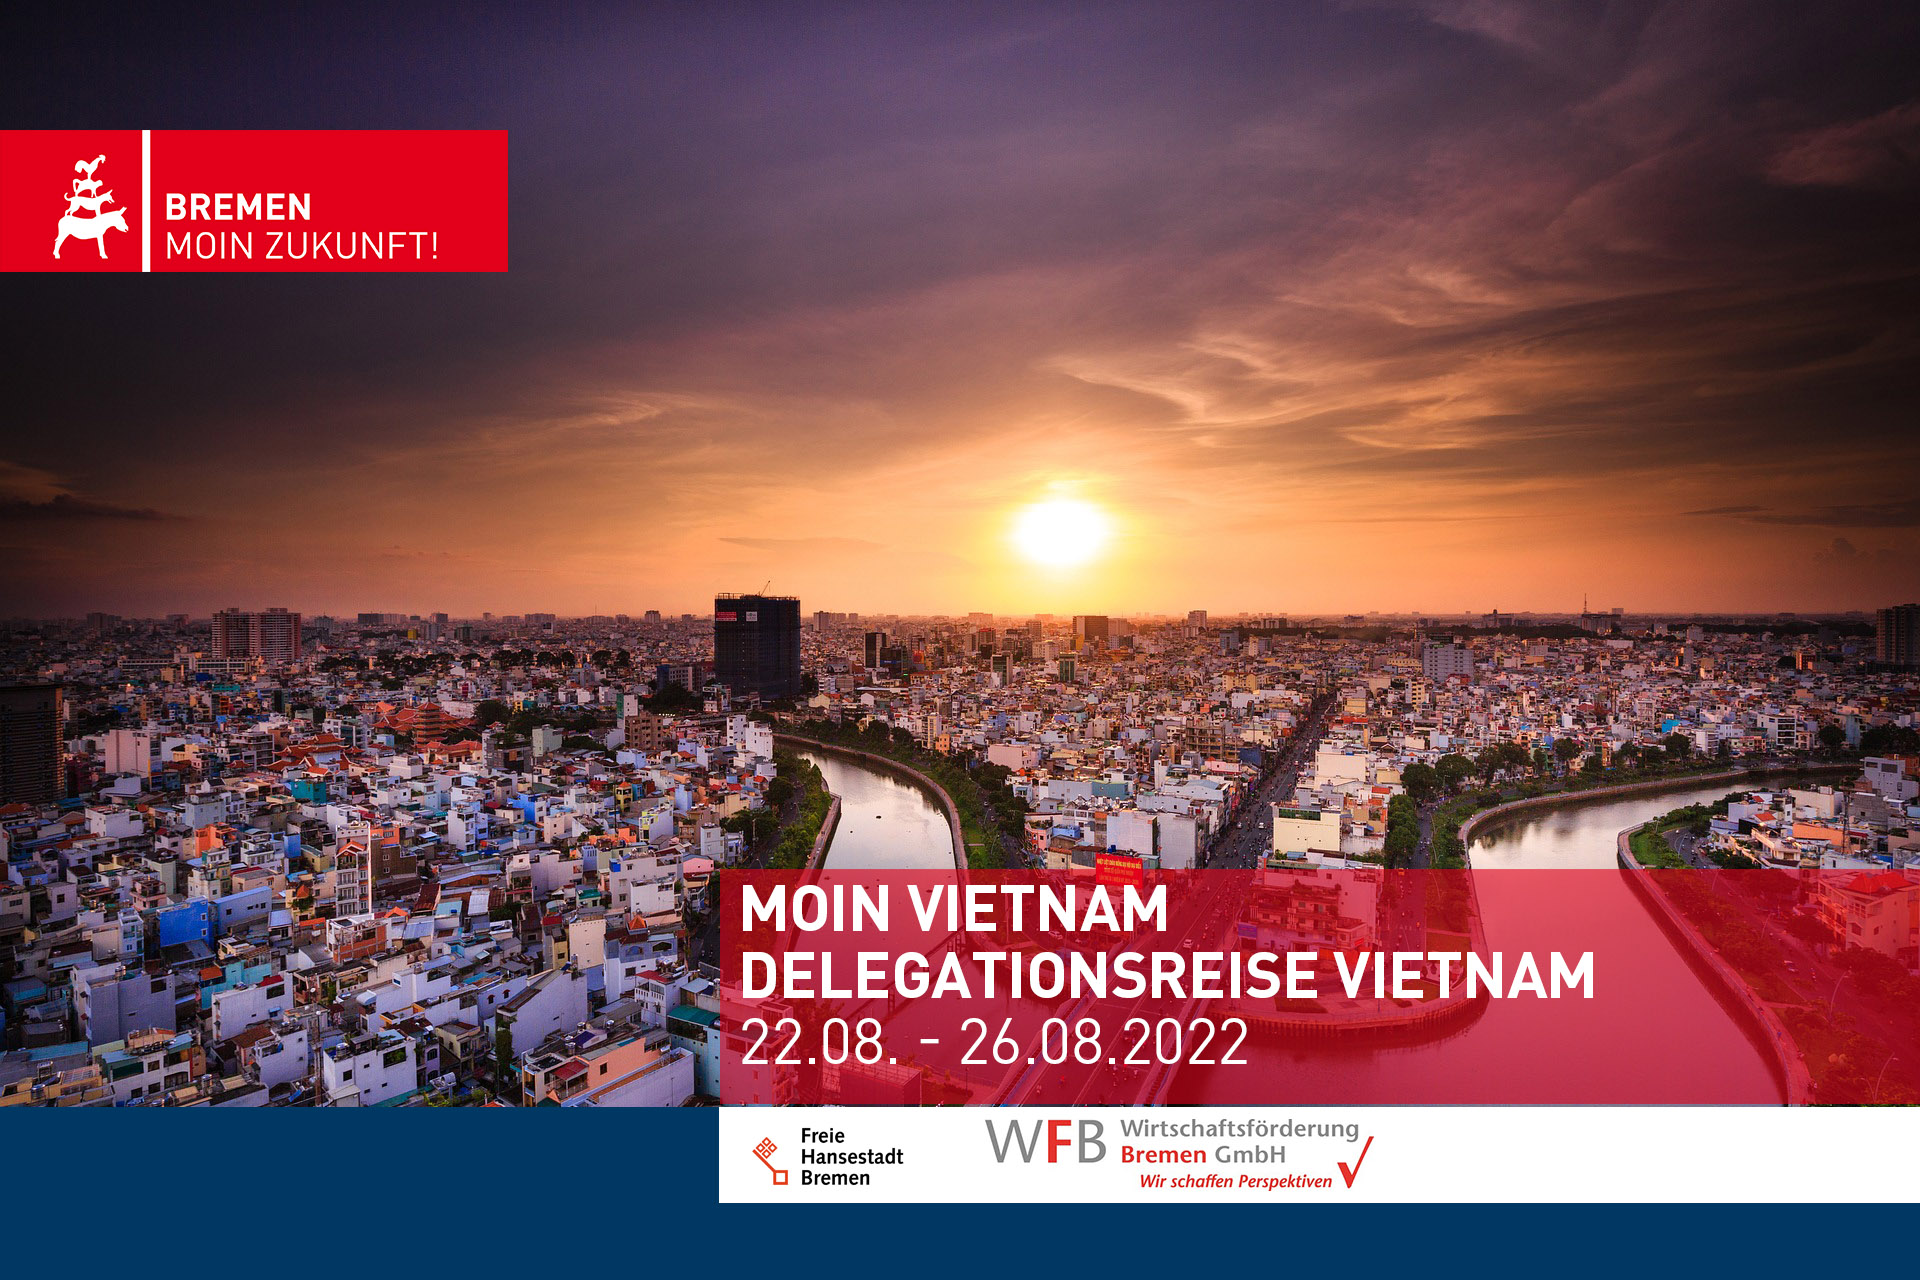 Moin Vietnam - Delegationsreise Vietnam